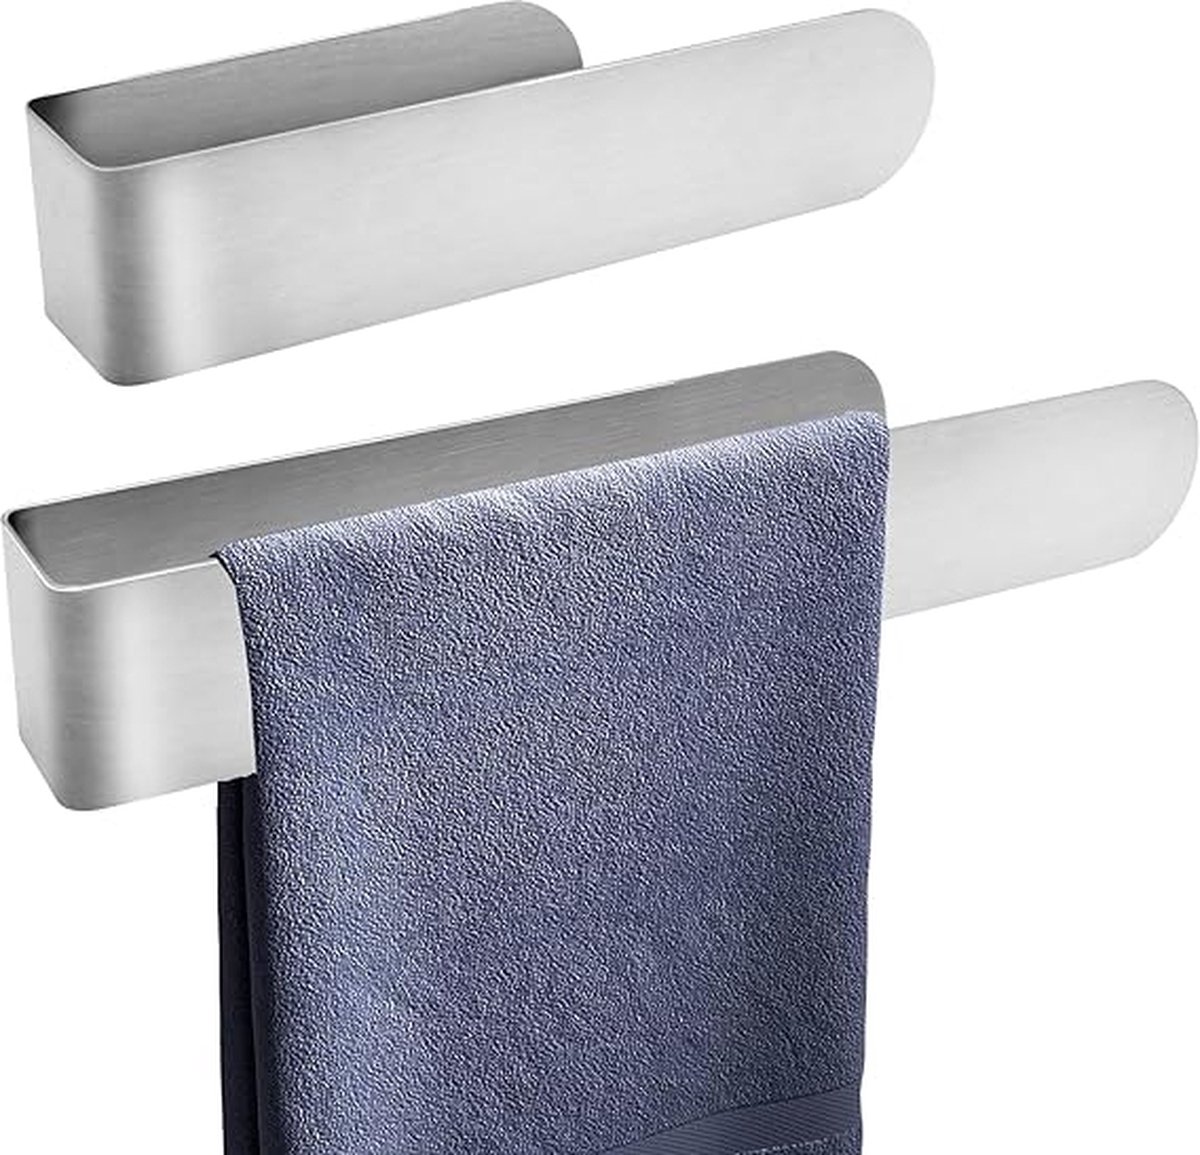 SHOP YOLO-handdoekenrek badkamer-Handdoekhouder zonder boren 20 cm-30 cm